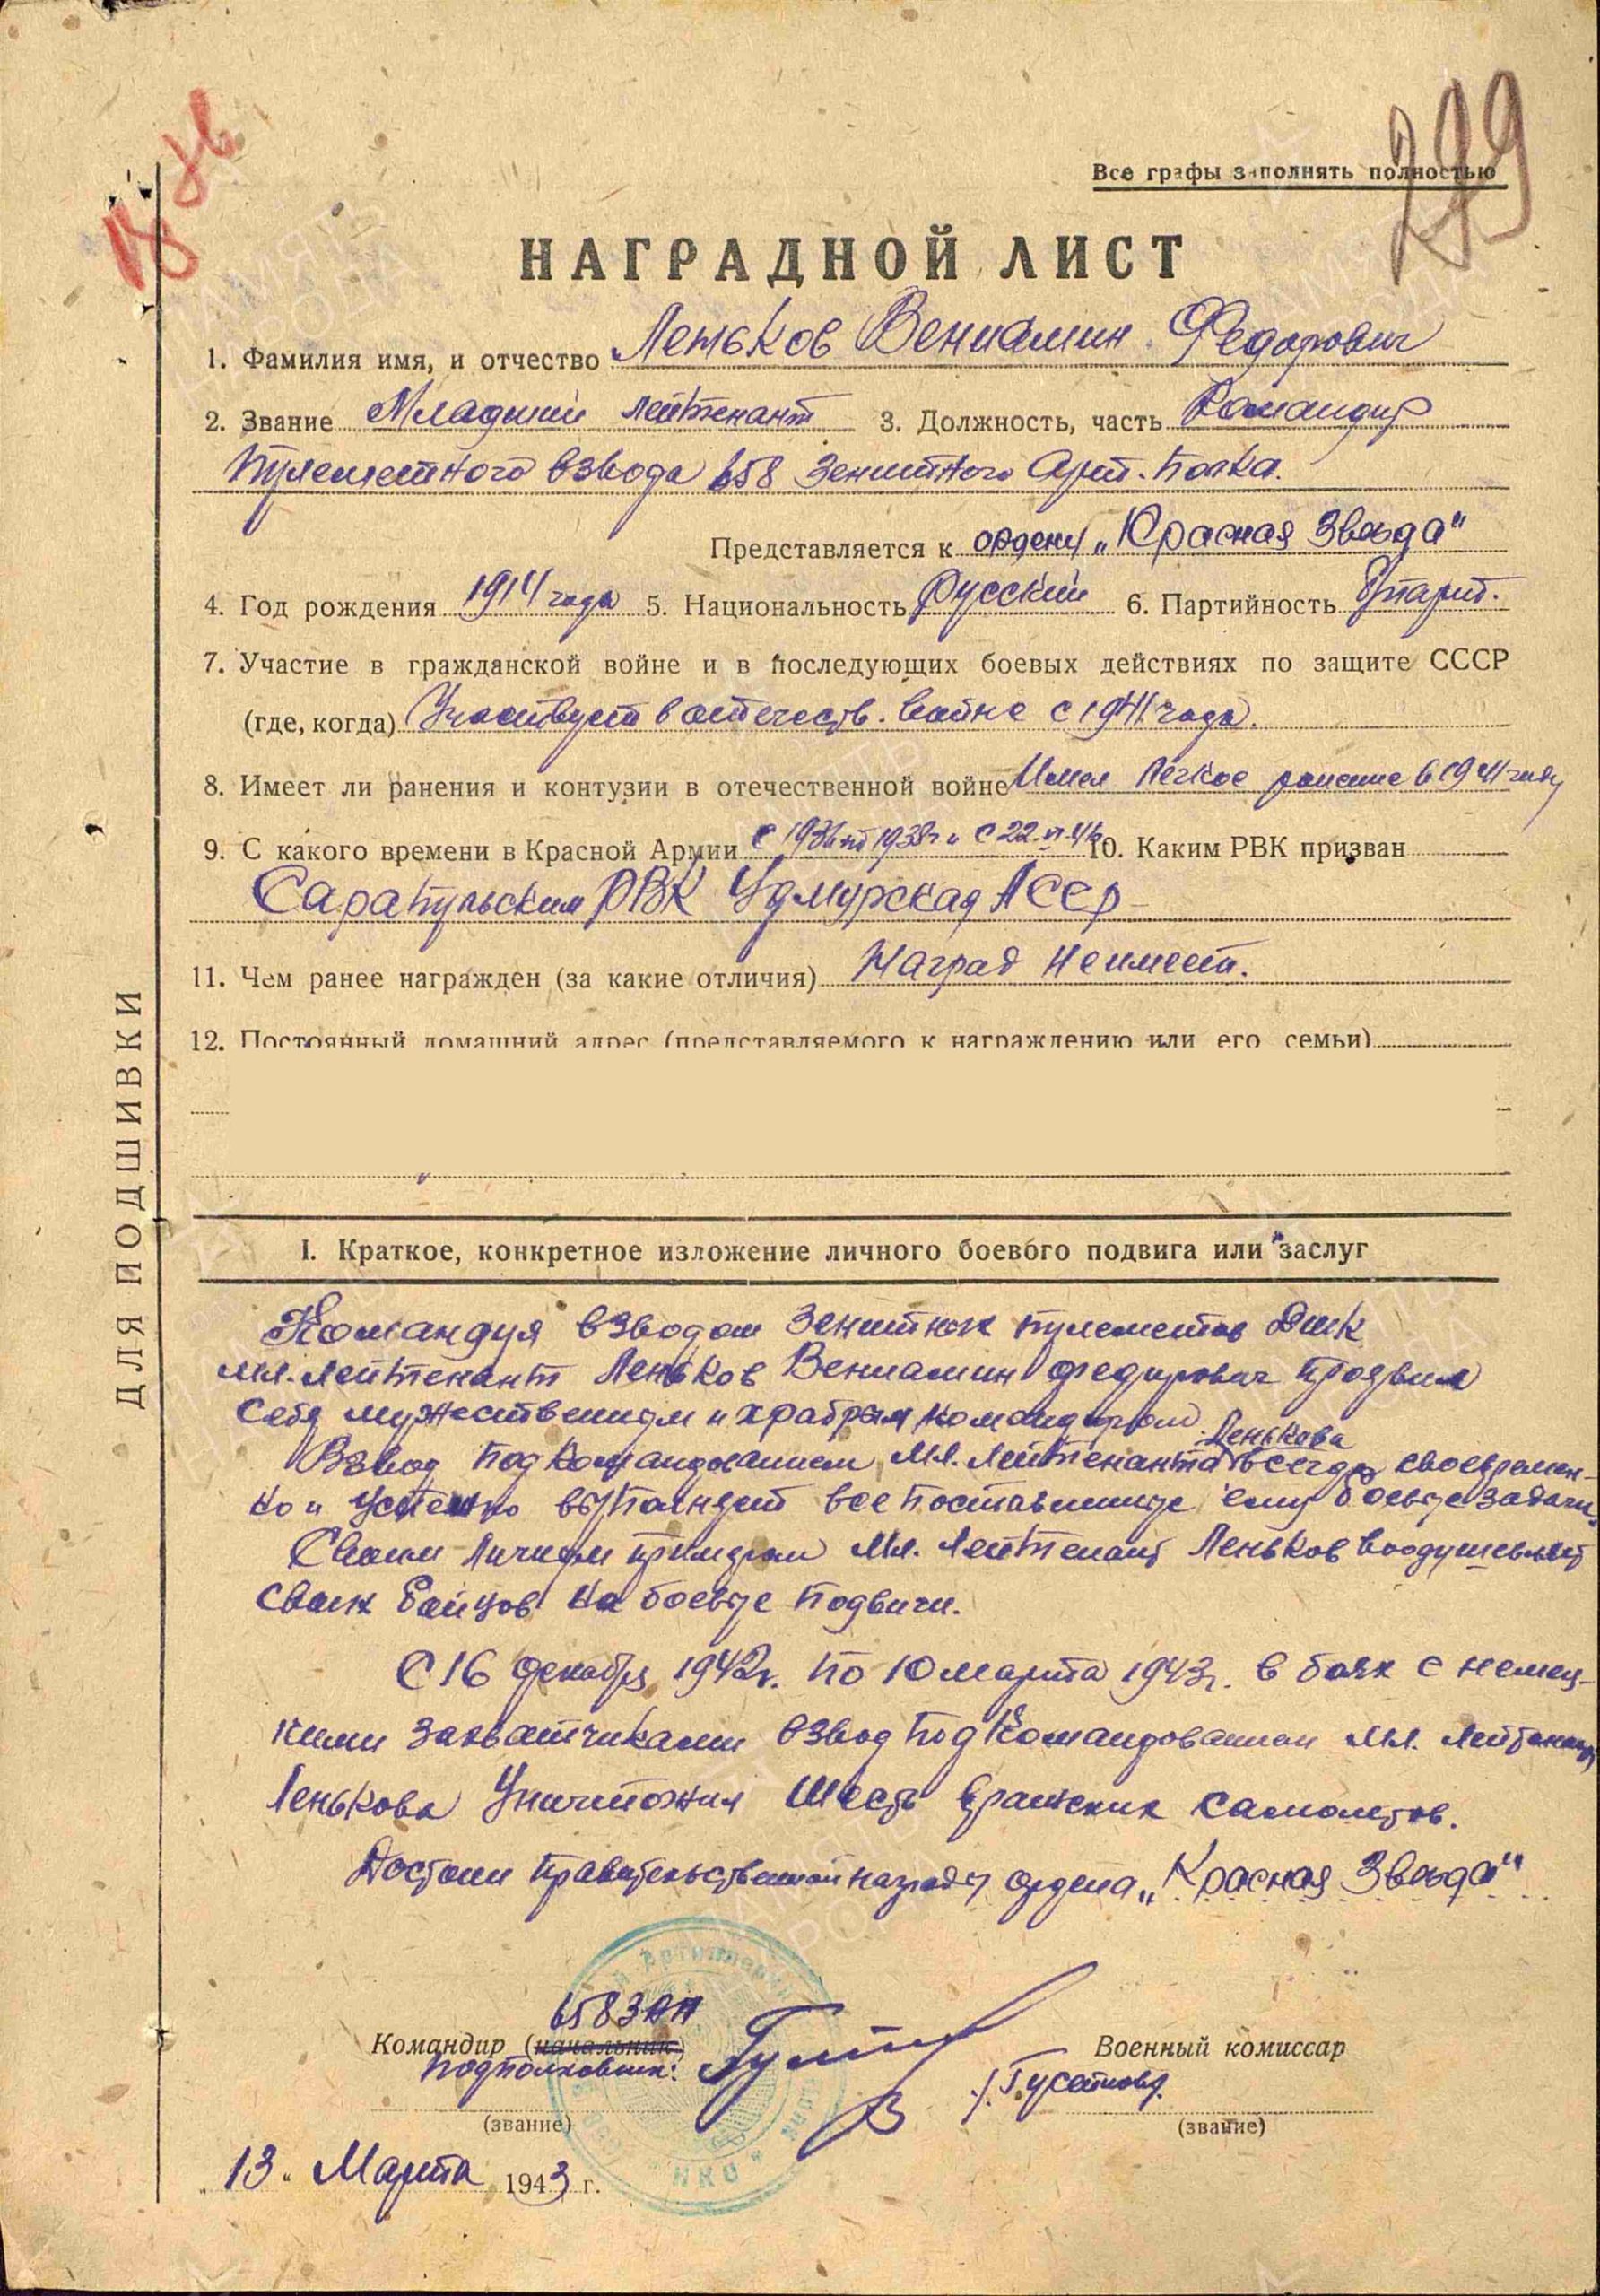 Наградной лист. Орден Красной Звезды (29.03.1943)